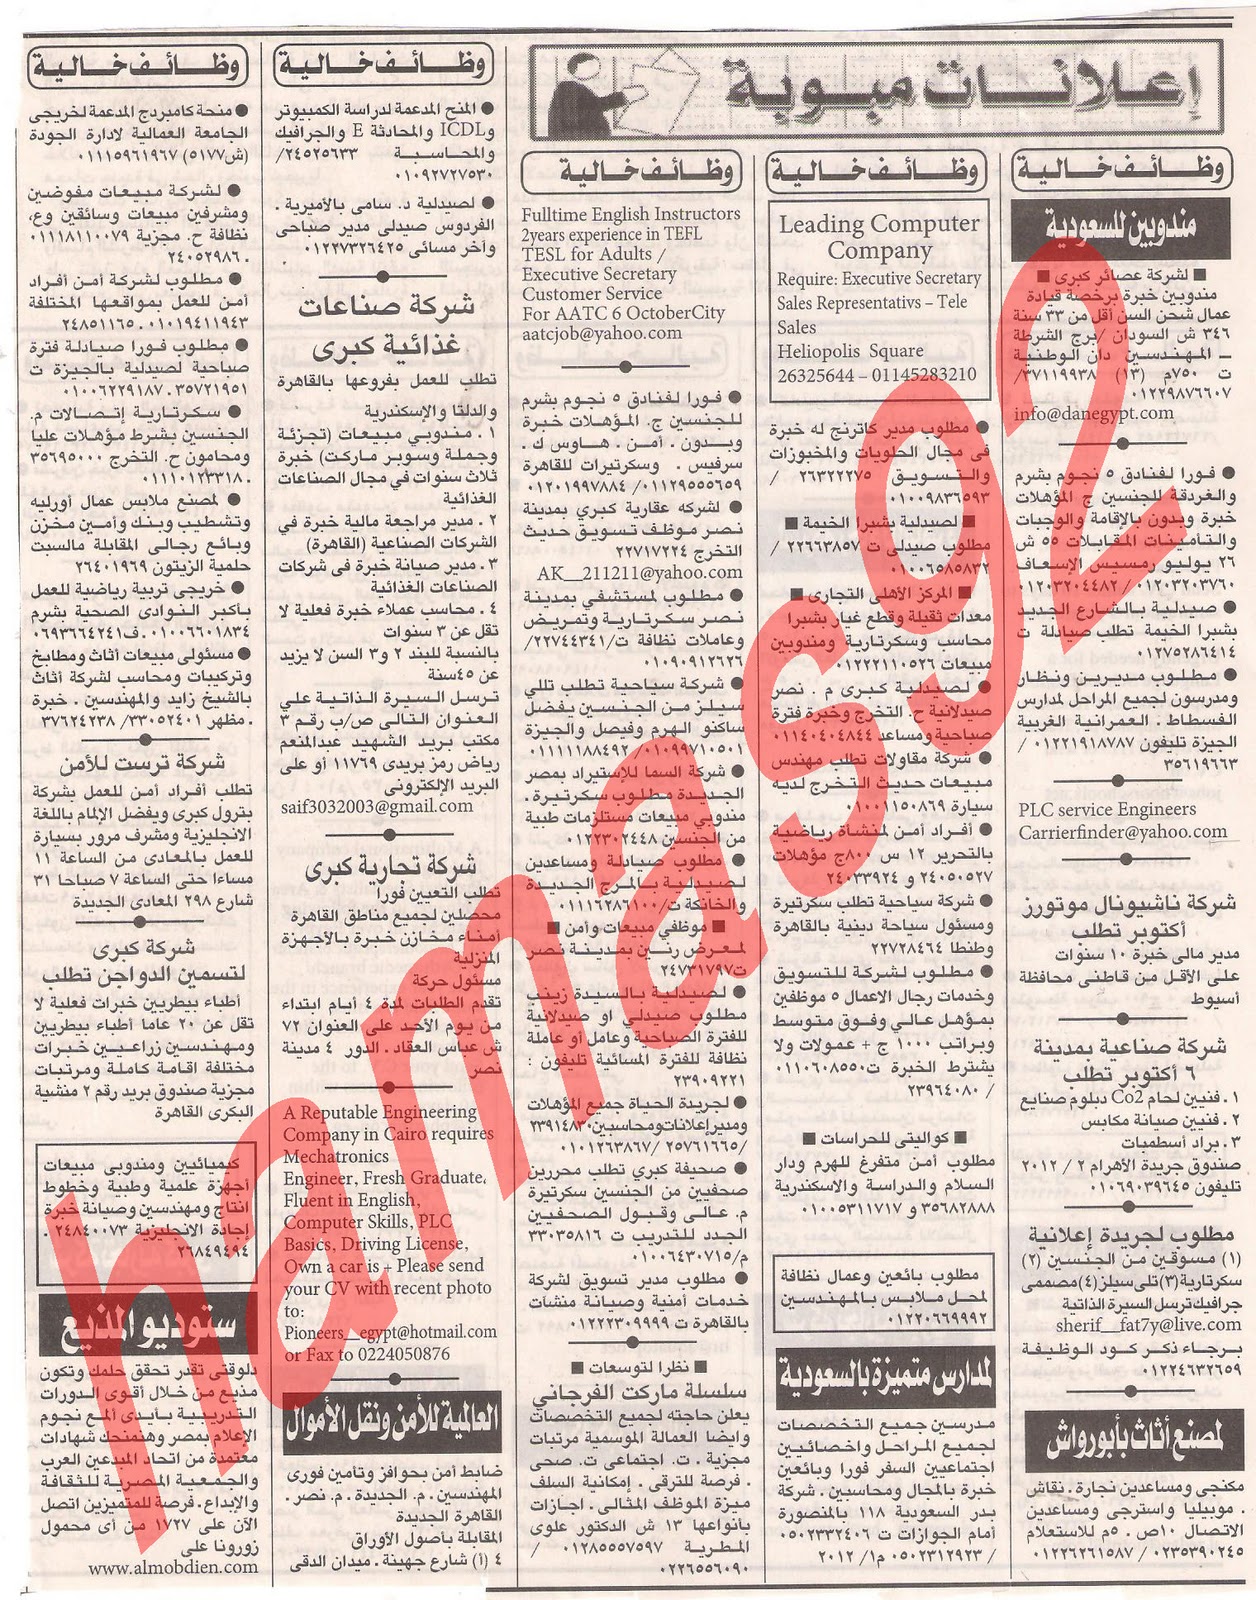 وظائف جريدة اهرام الجمعة 6\1\2012 و الجزء الاول Picture+002